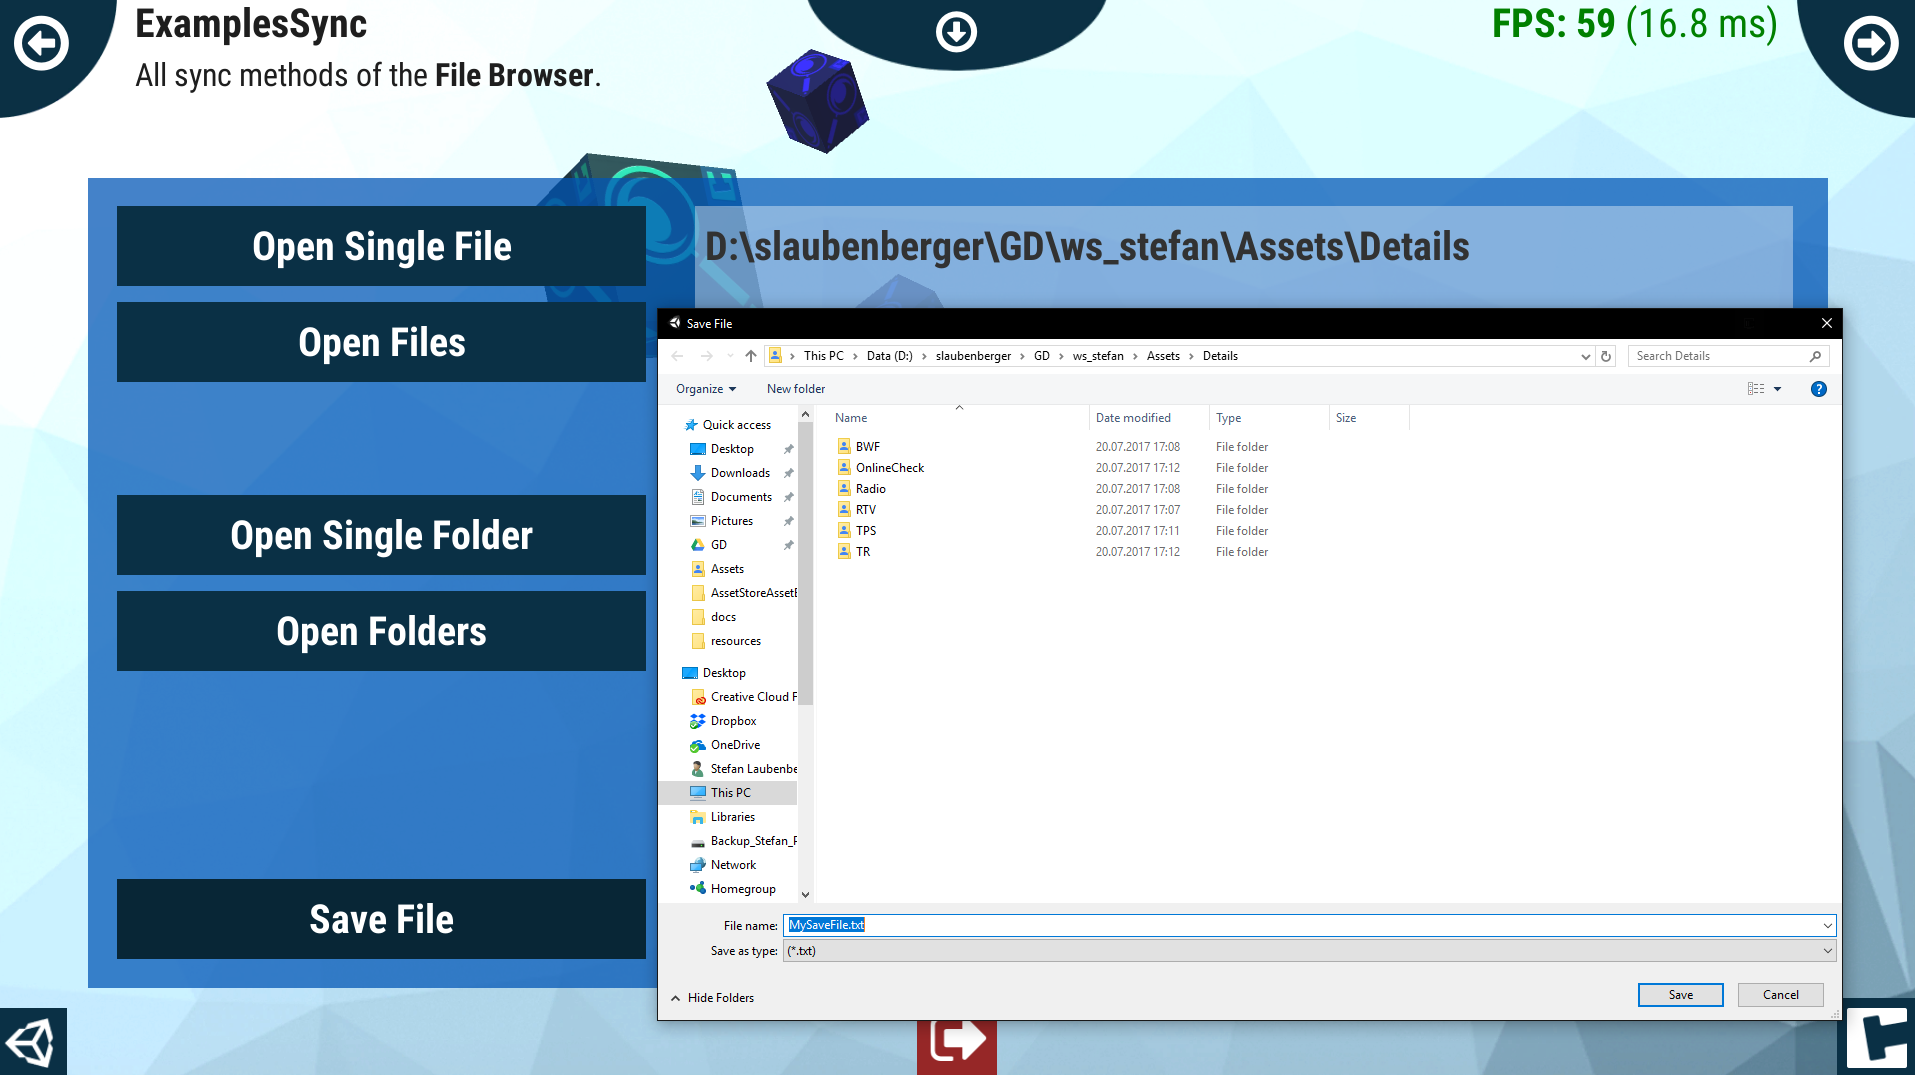 data/assets/FileBrowser/images/slider/04-savefile.PNG